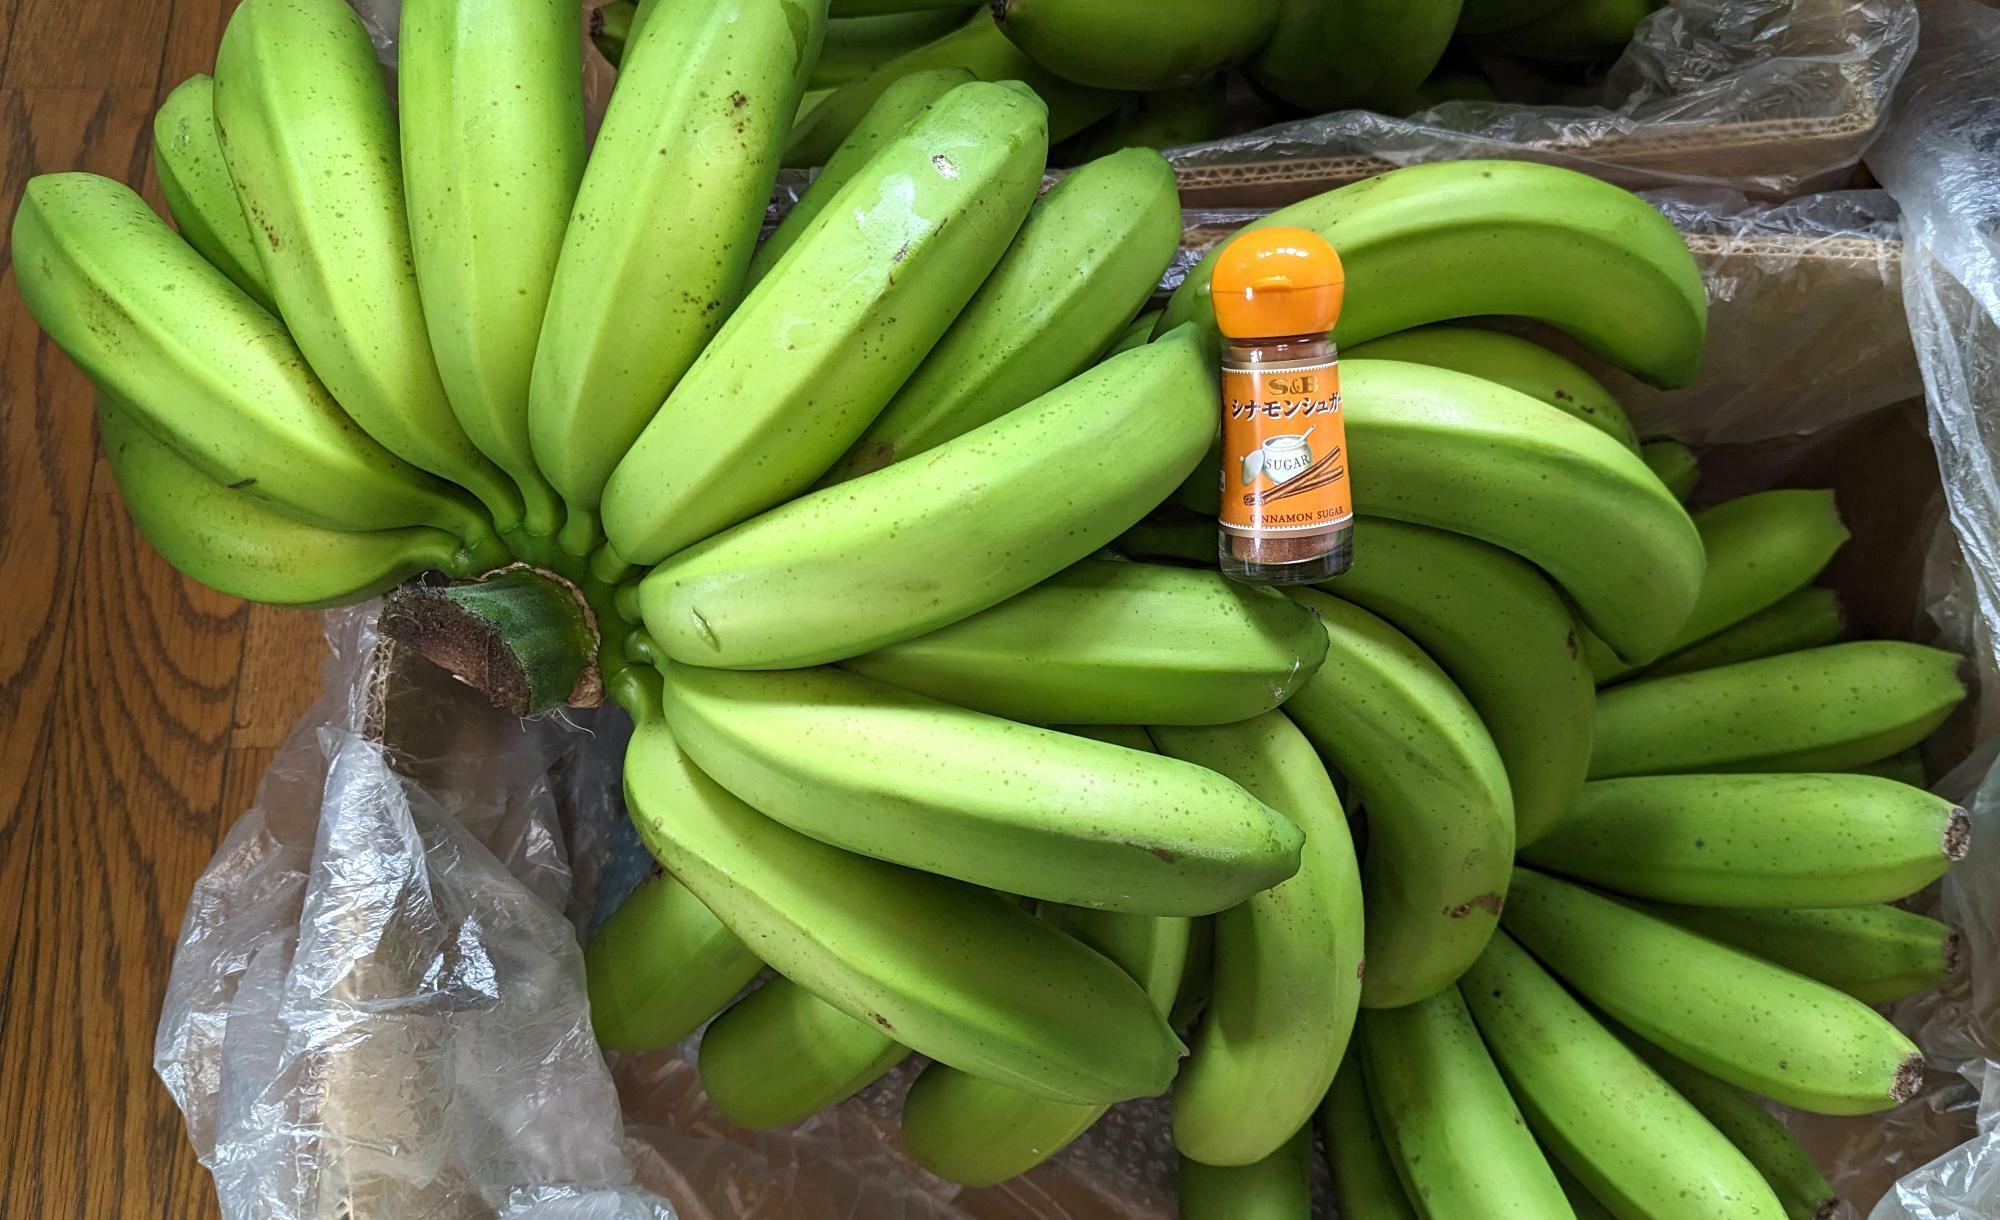 収穫した「からっ風バナナ」スパイスの瓶は大きさの比較用です